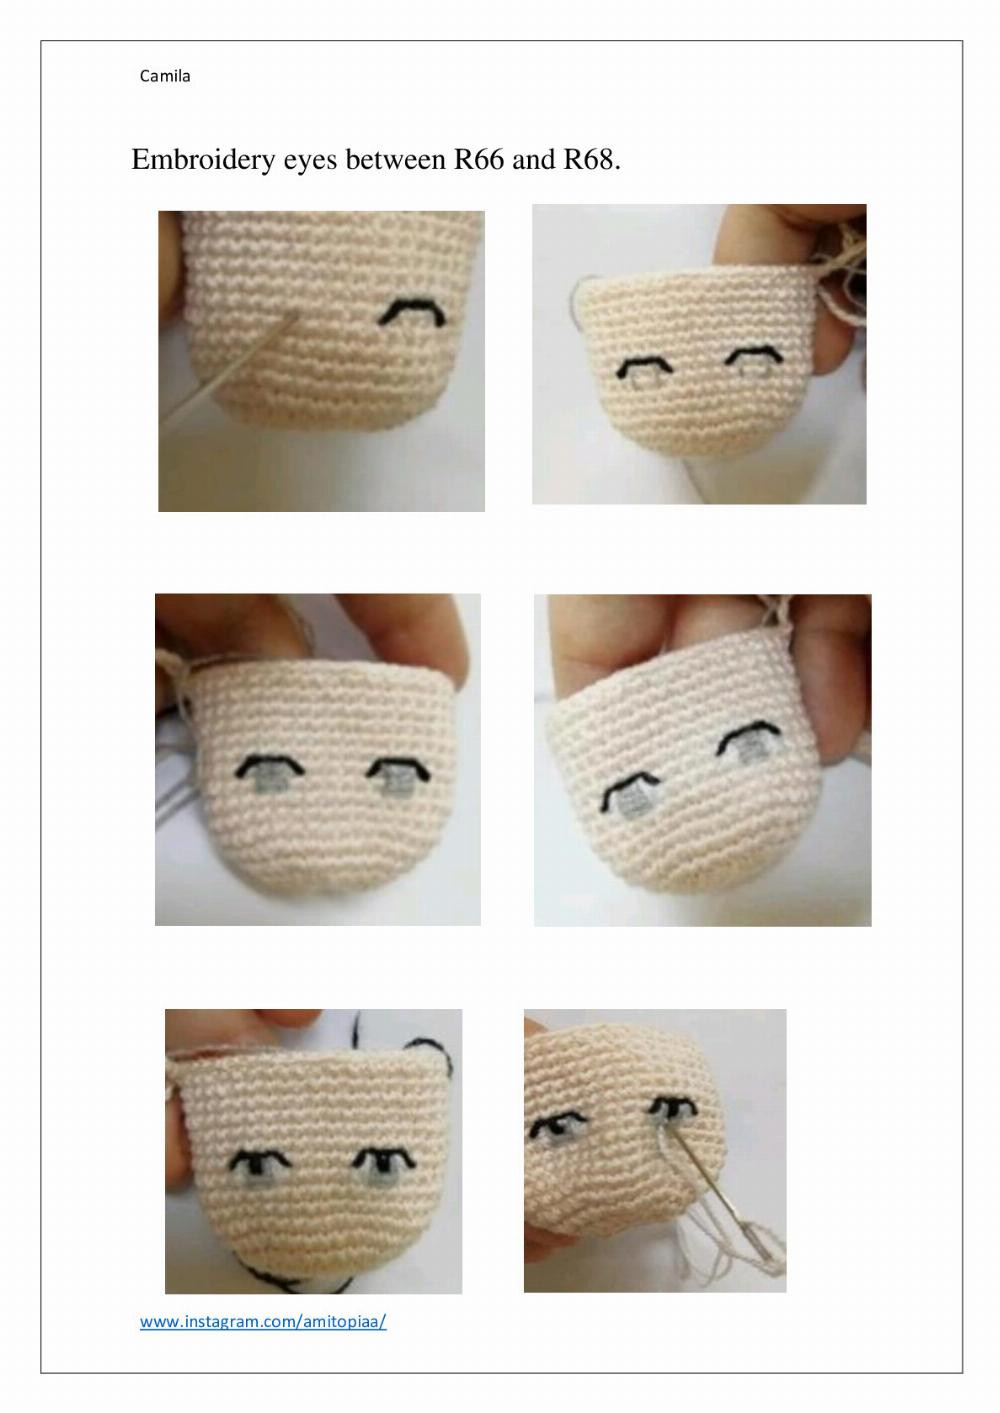 Camila Camila crochet pattern